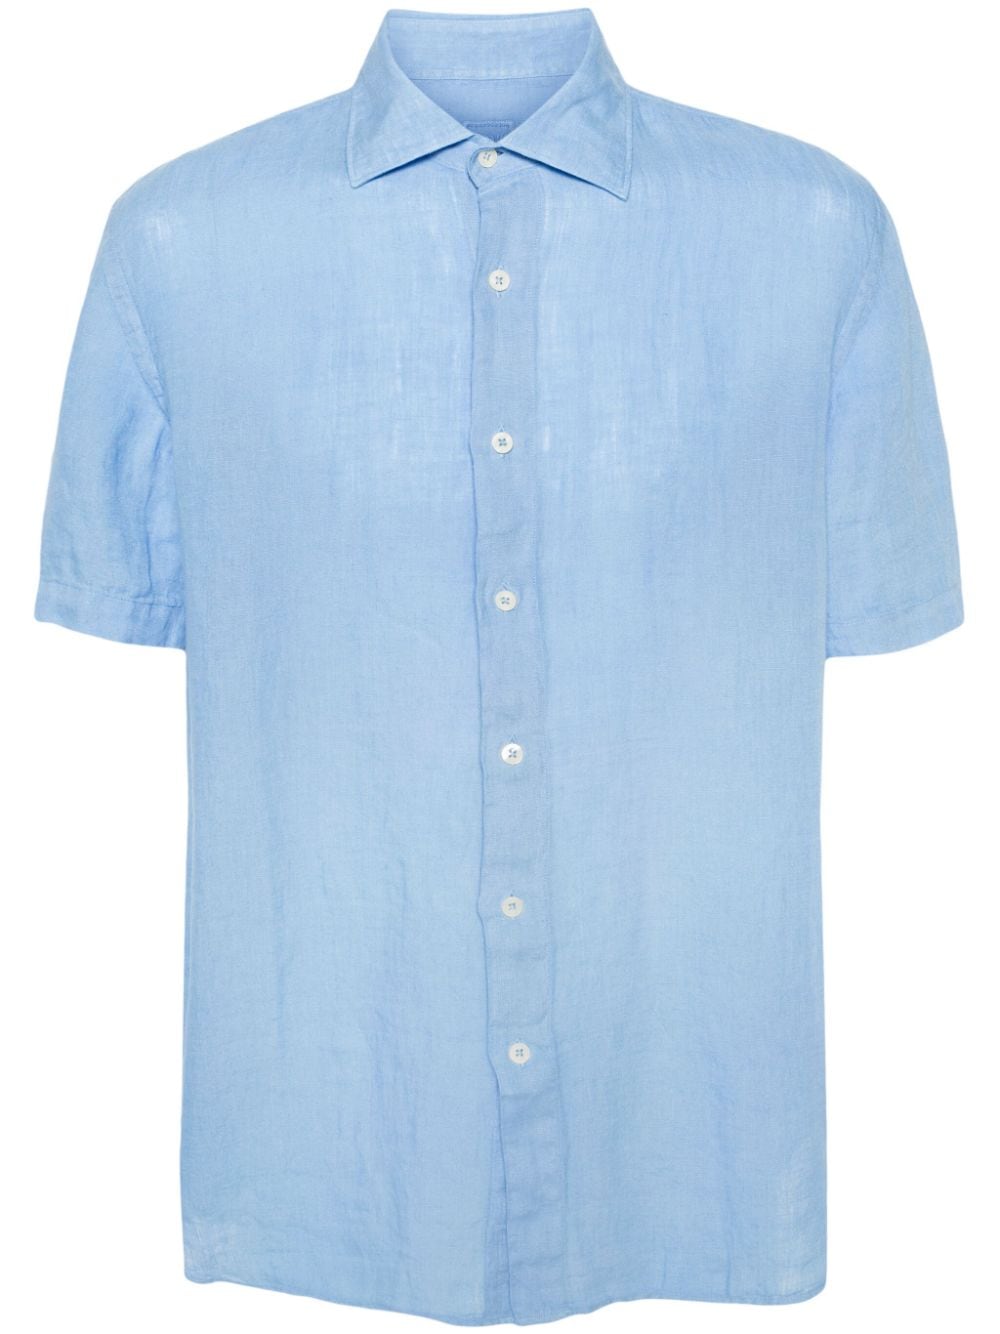 short-sleeve linen shirt